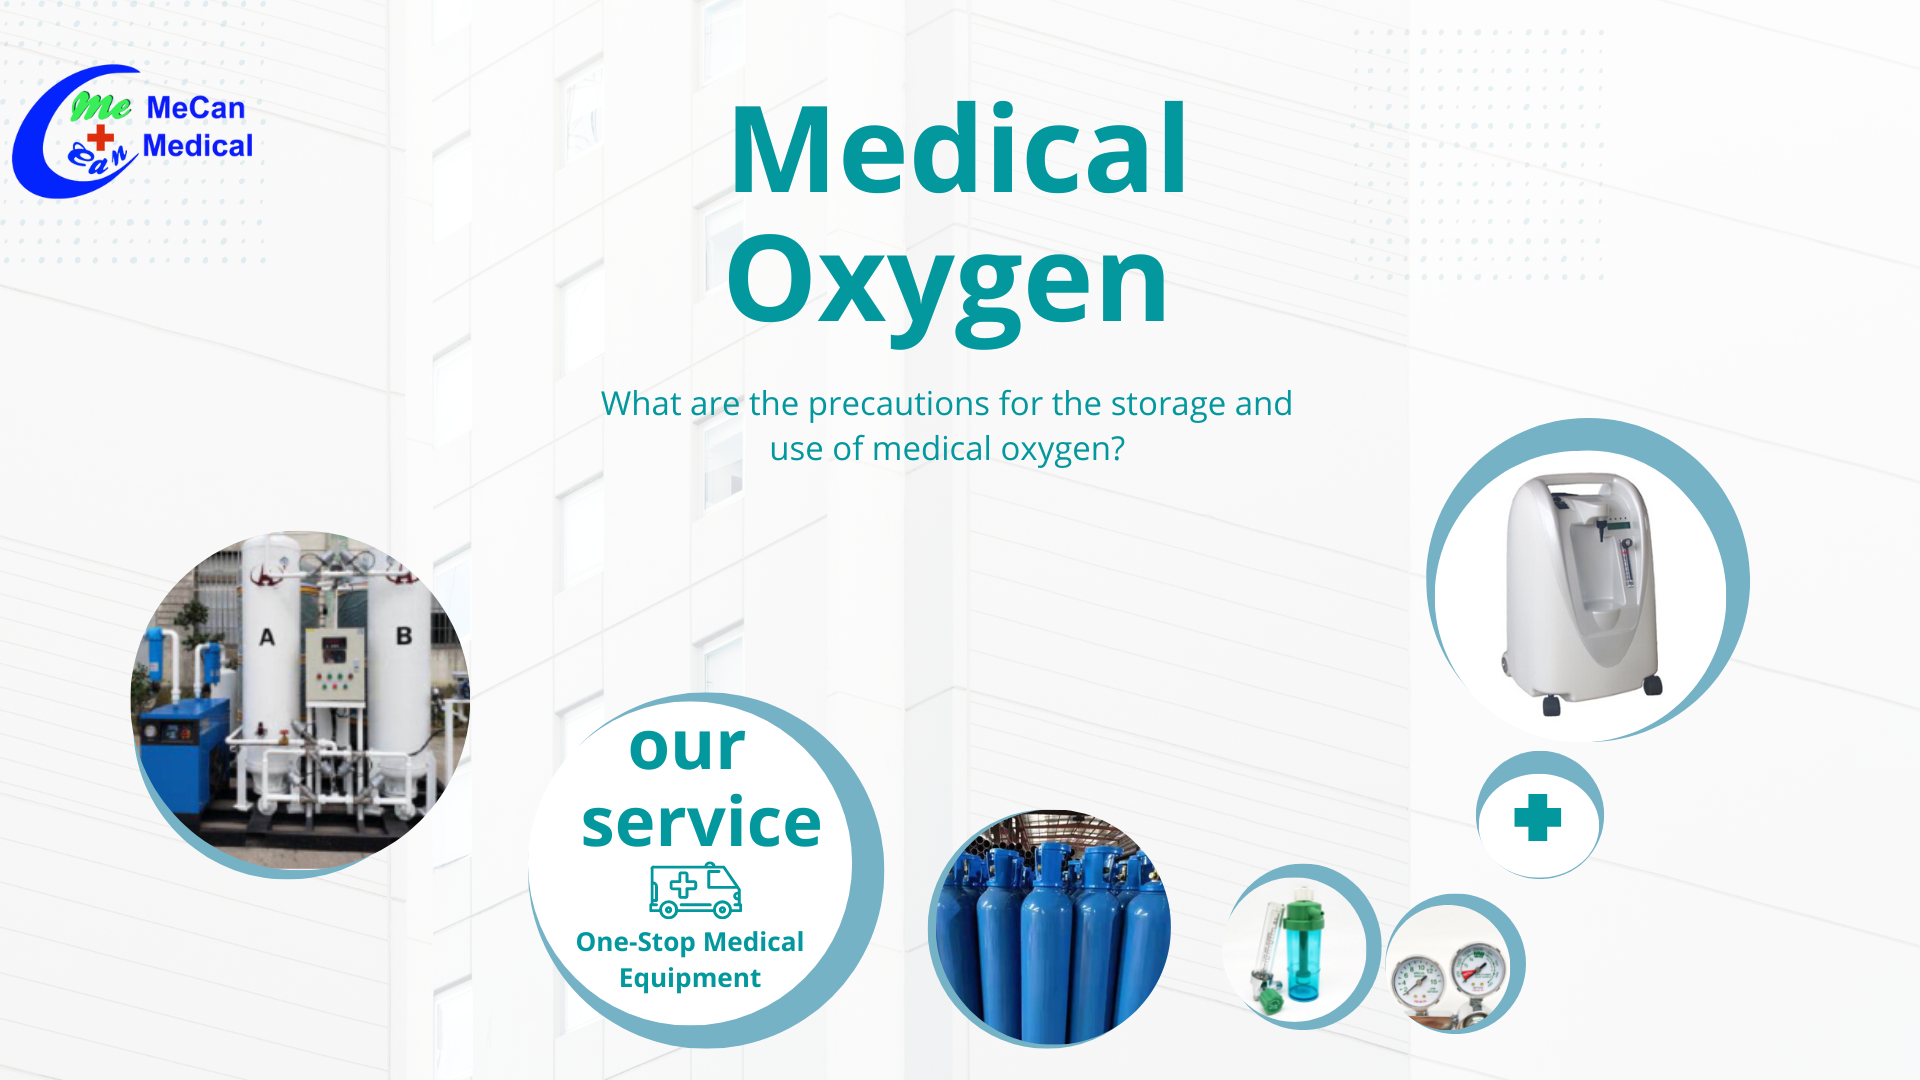 Apa pancegahan kanggo panyimpenan lan panggunaan oksigen medis?